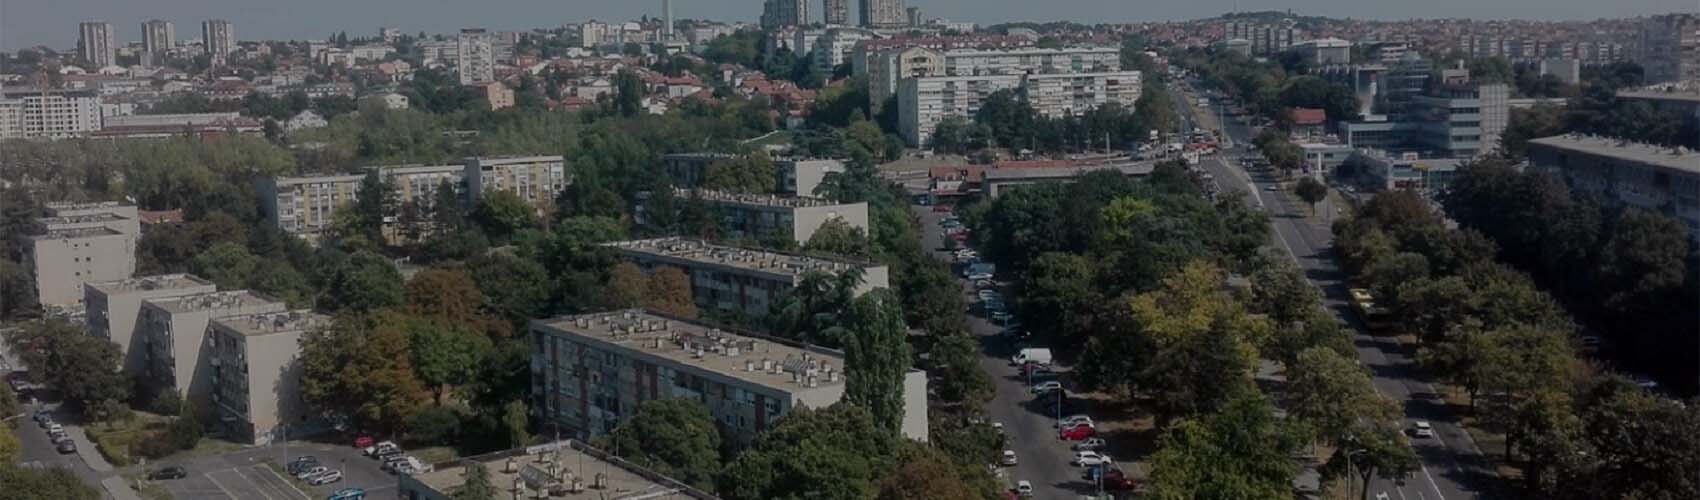 Iznajmljivanje kombija Šumice | DeltaTop, Beograd